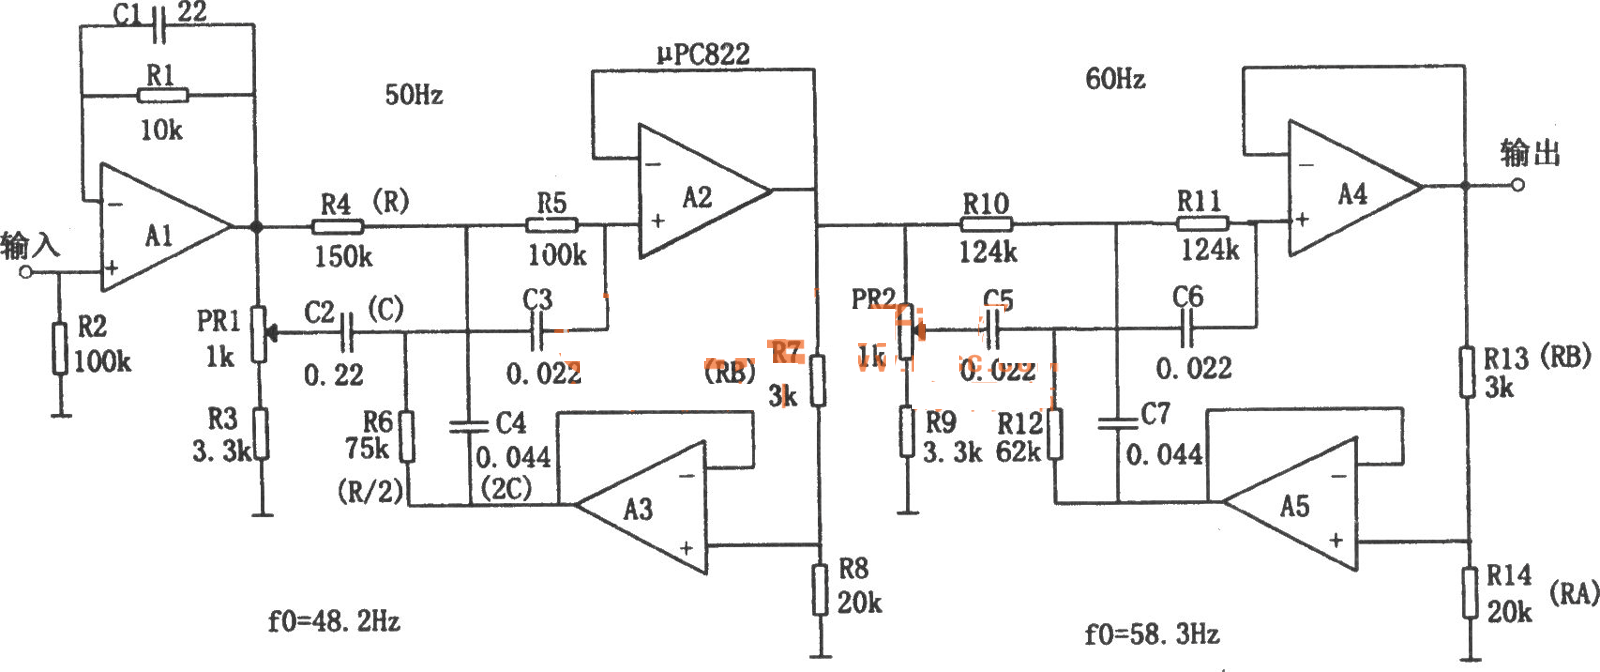 UPC822电源频率噪声滤波器电路